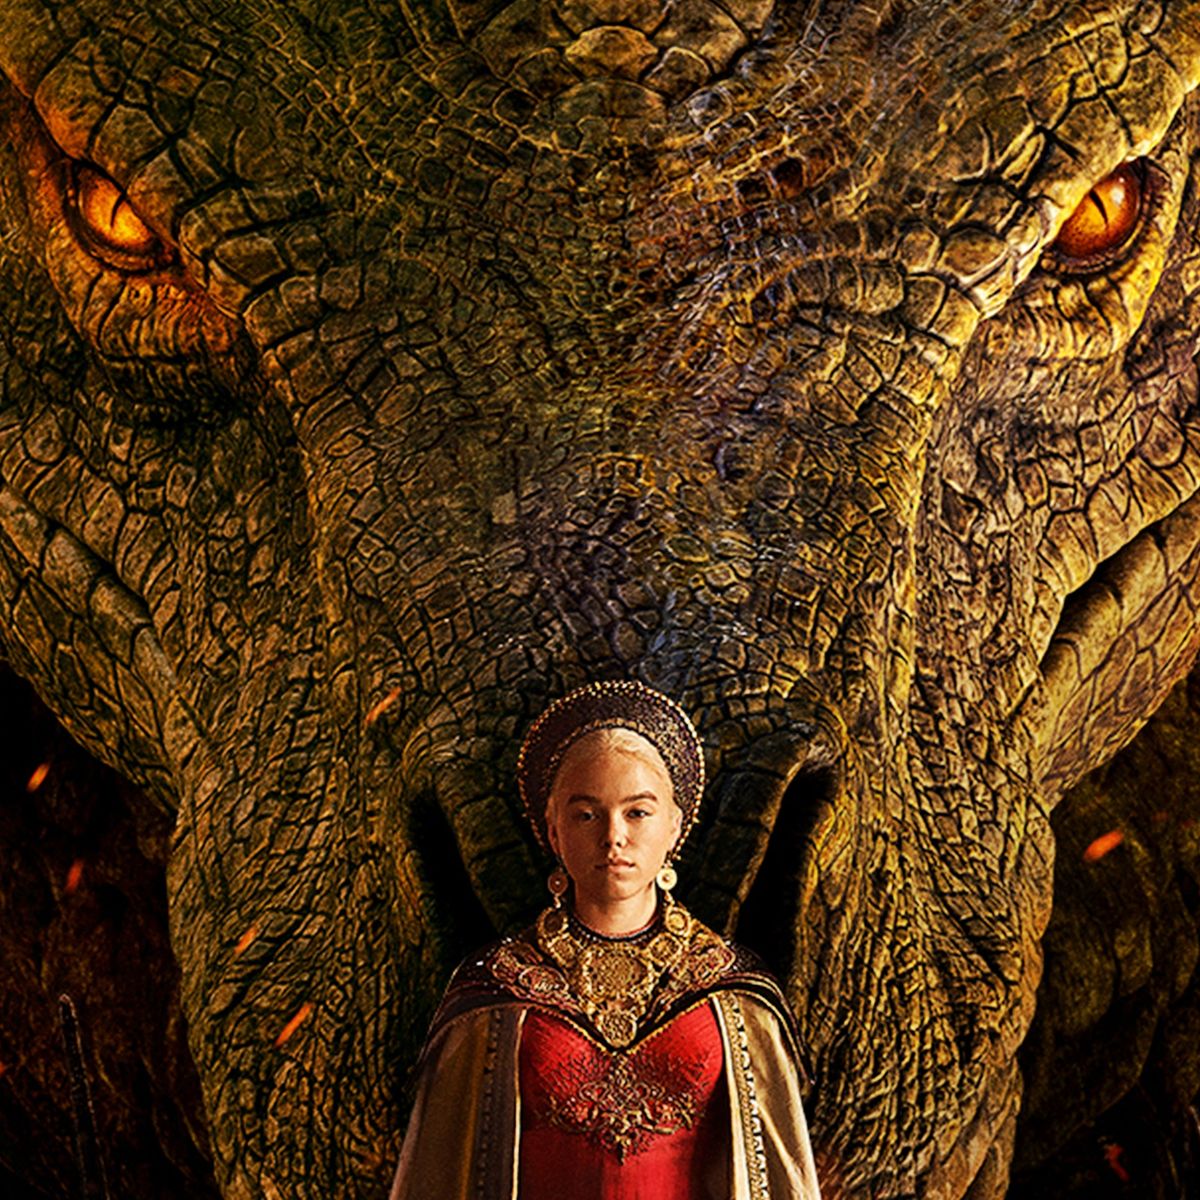 HBO Max divulga pôster oficial da série 'A Casa do Dragão